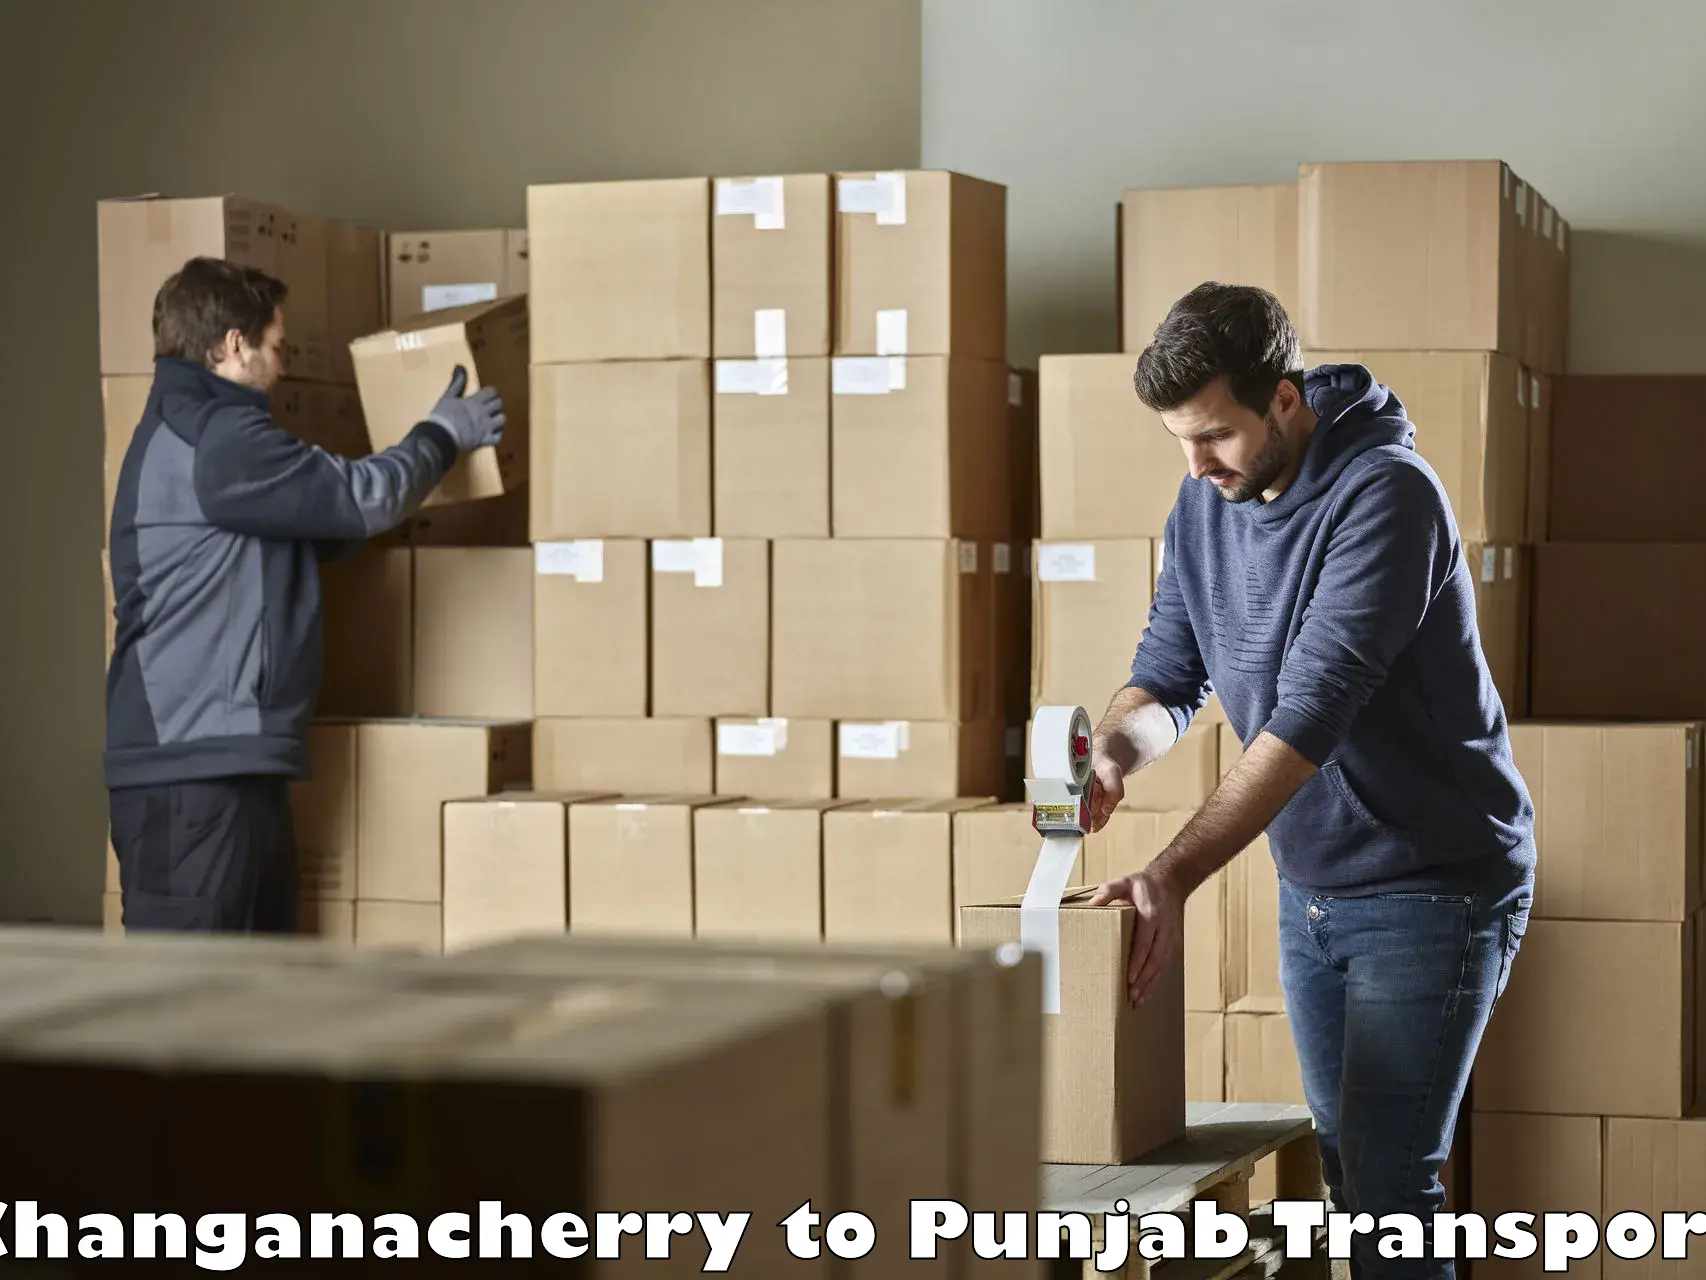 Bike shipping service Changanacherry to Punjab